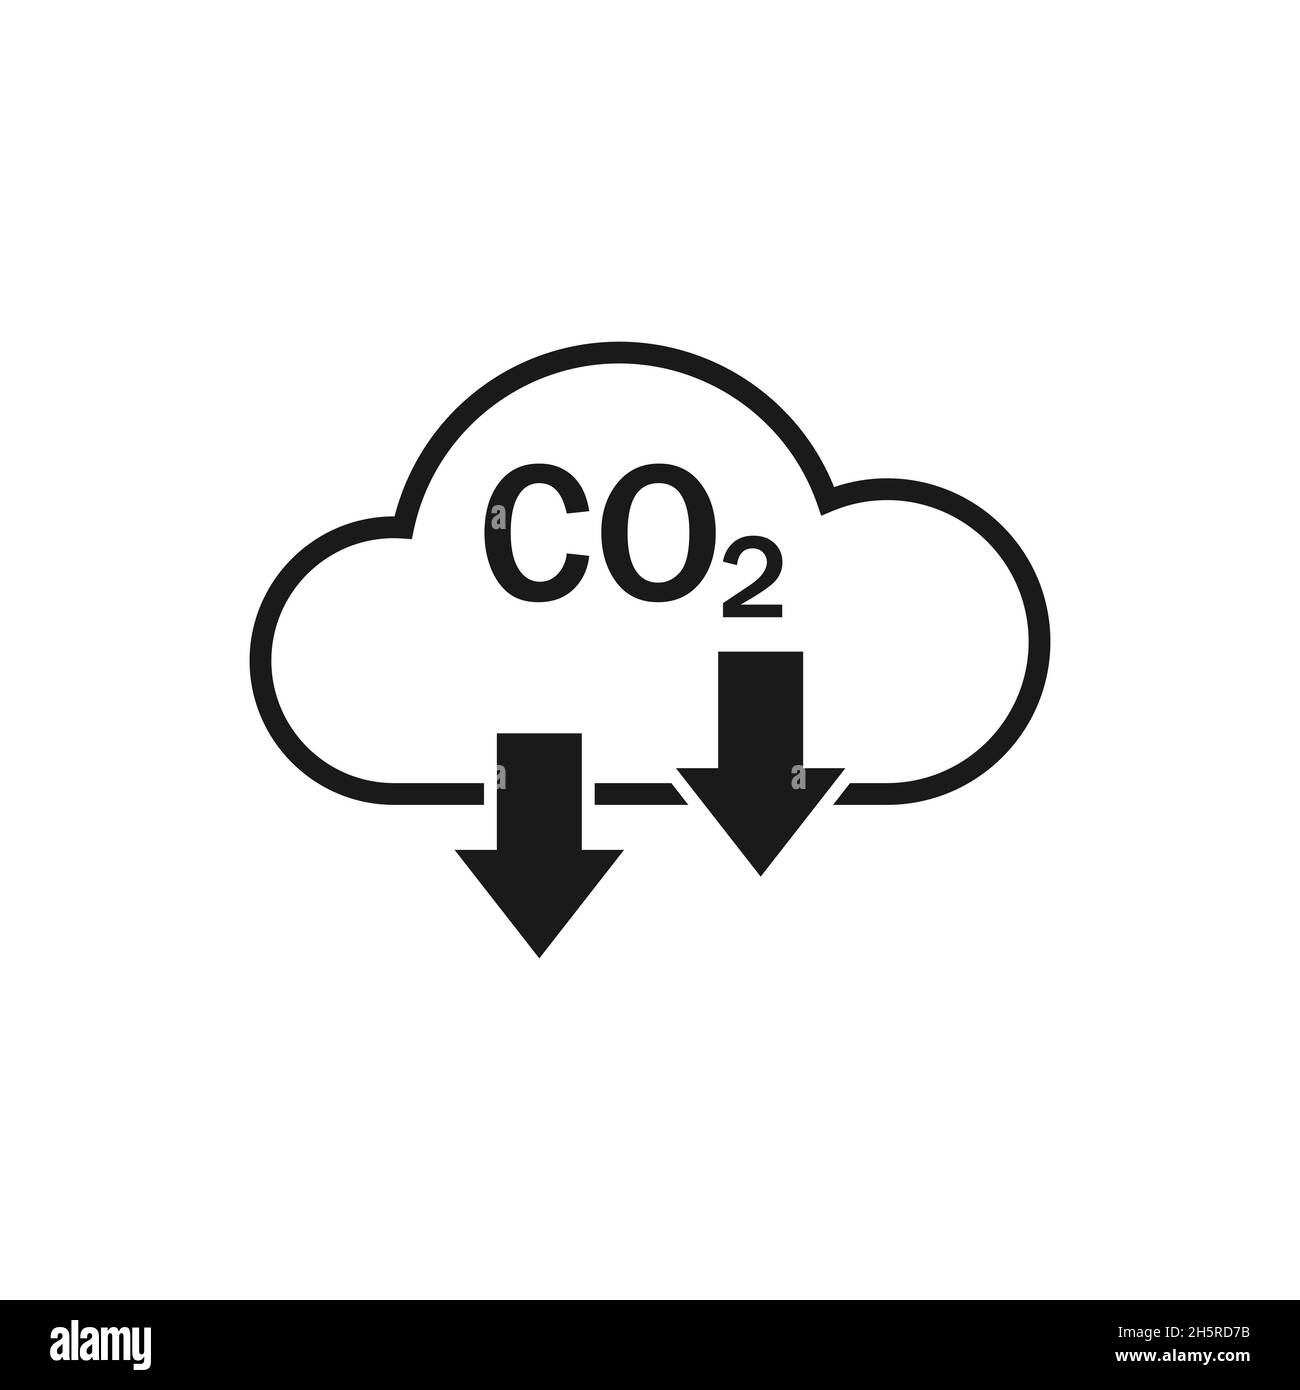 Reduction Carbon Icon flach, tolles Design für jeden Zweck. Symbol für den flachen CO2-Vektor Stock Vektor